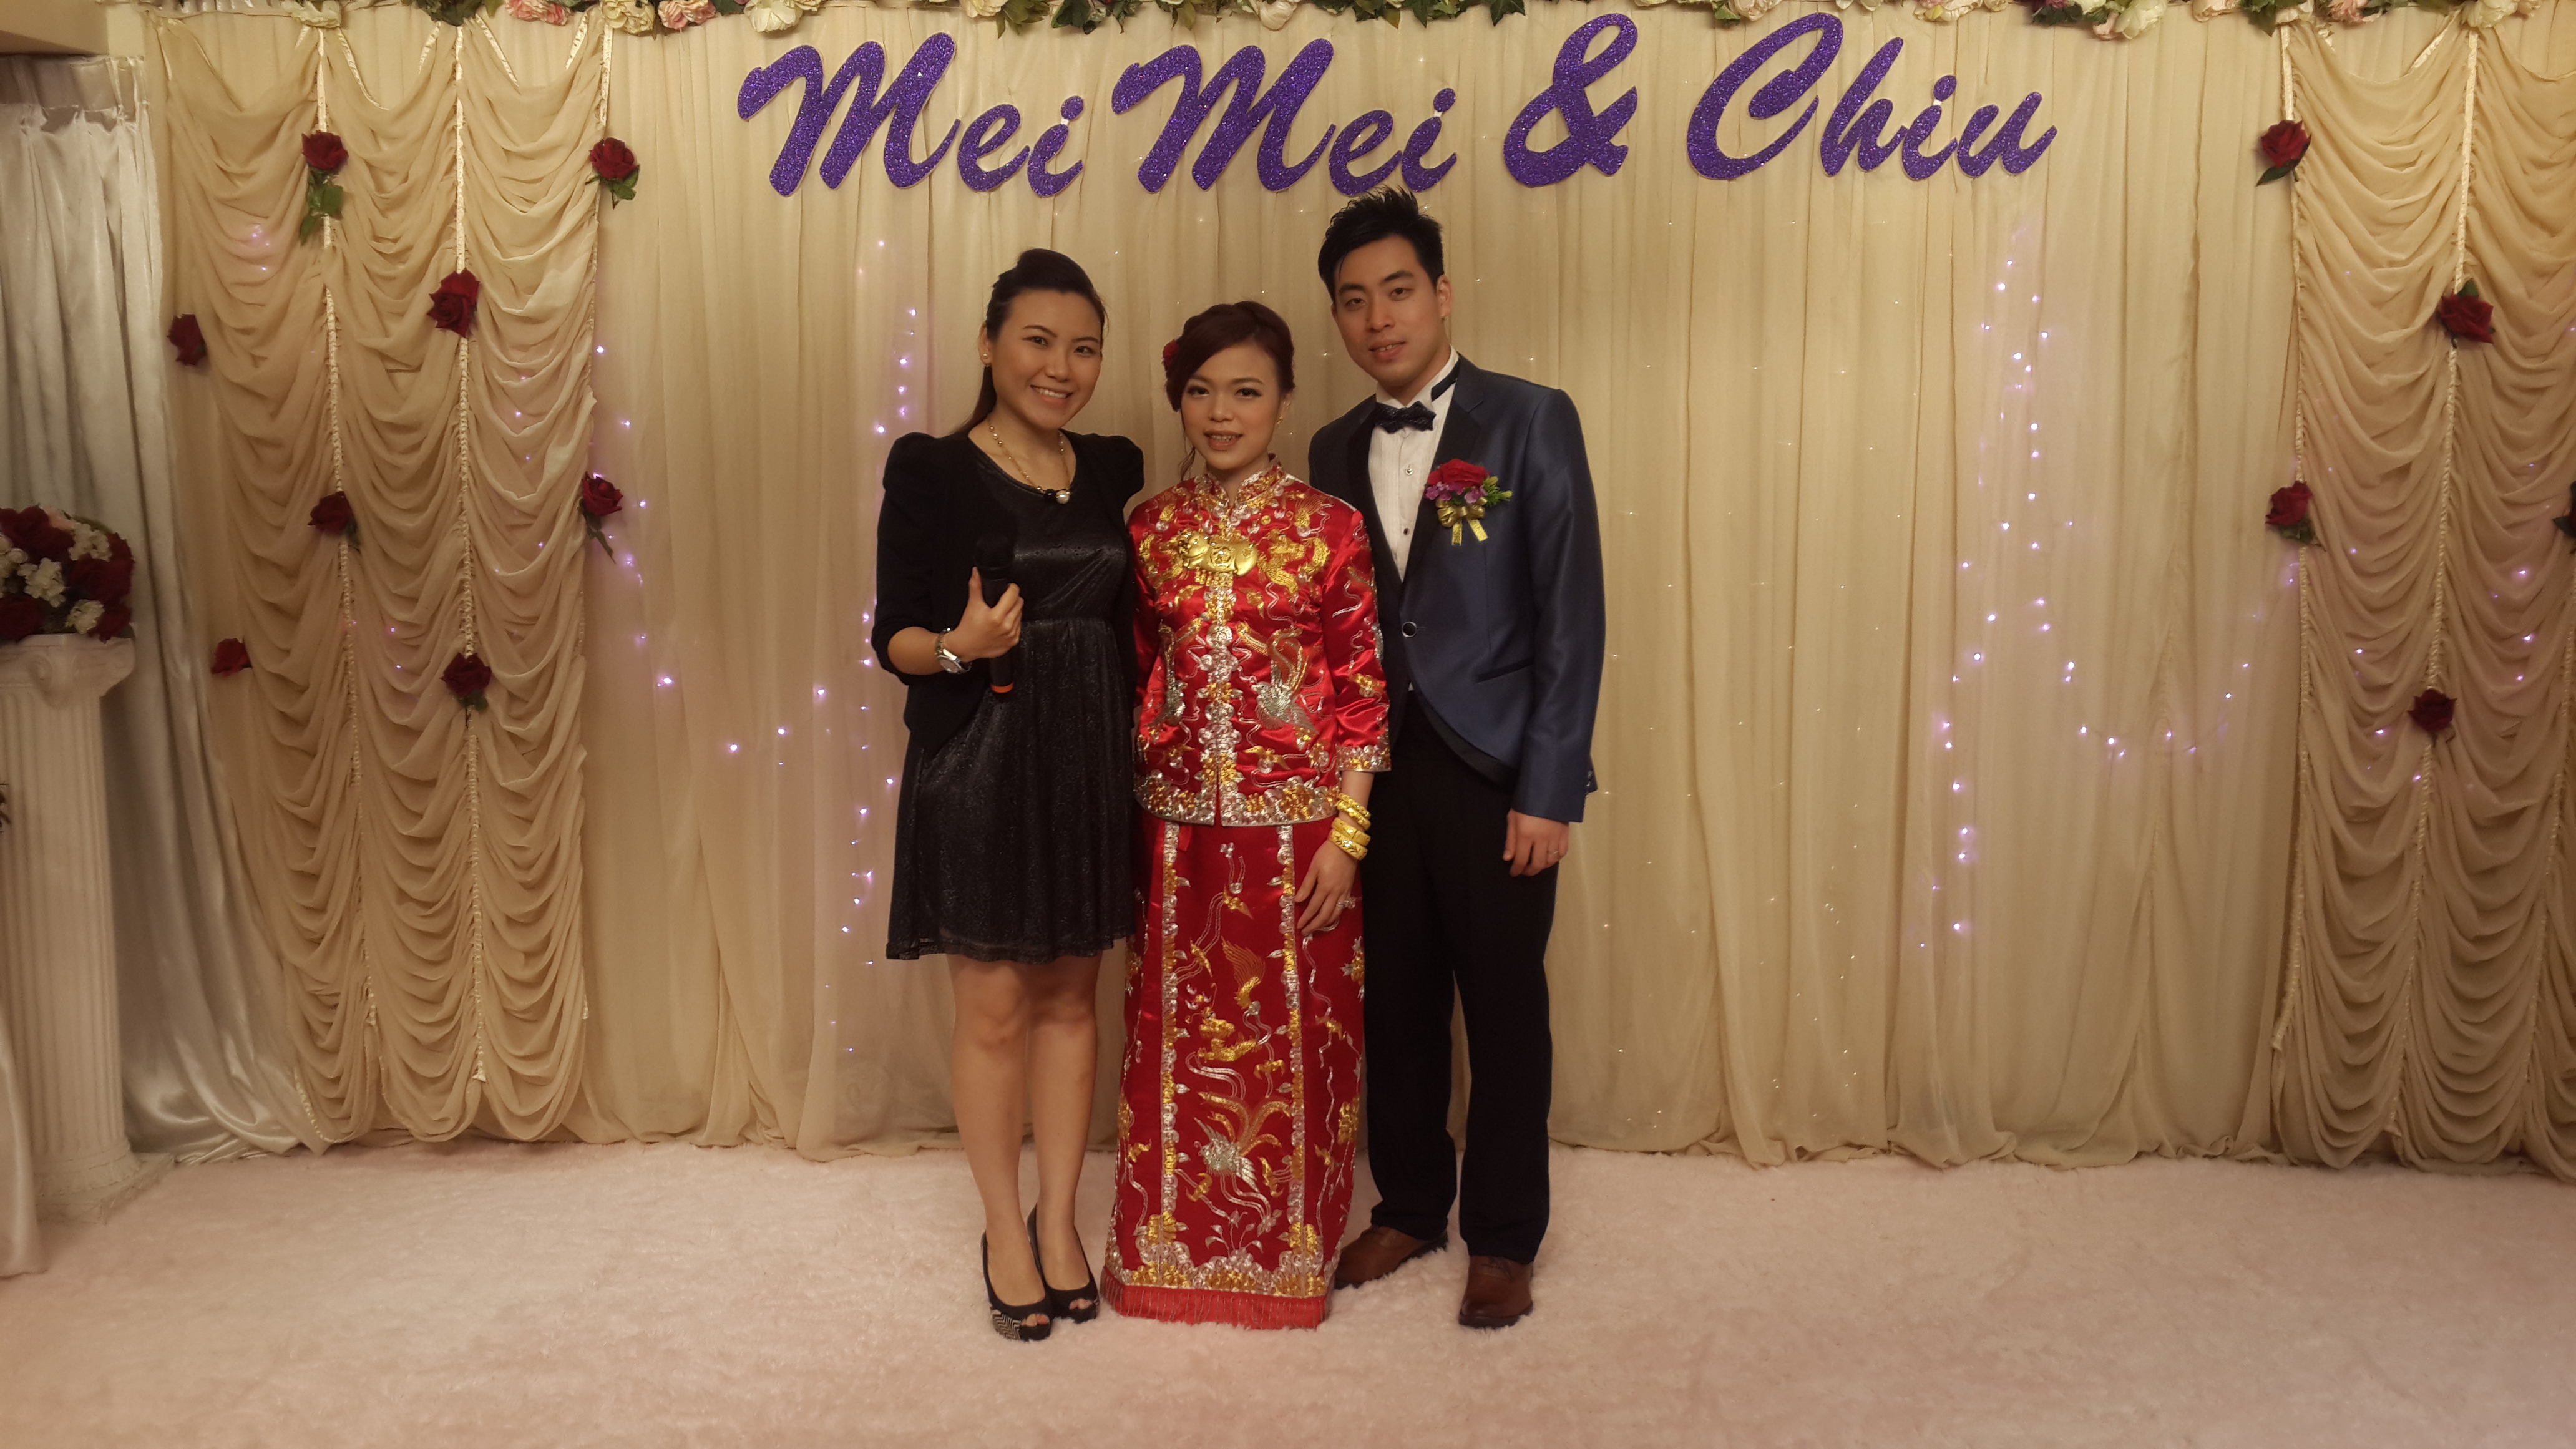 MC Yan TAM司儀工作紀錄: Wedding MC 婚宴司儀 - MeiMei & Chiu Wedding